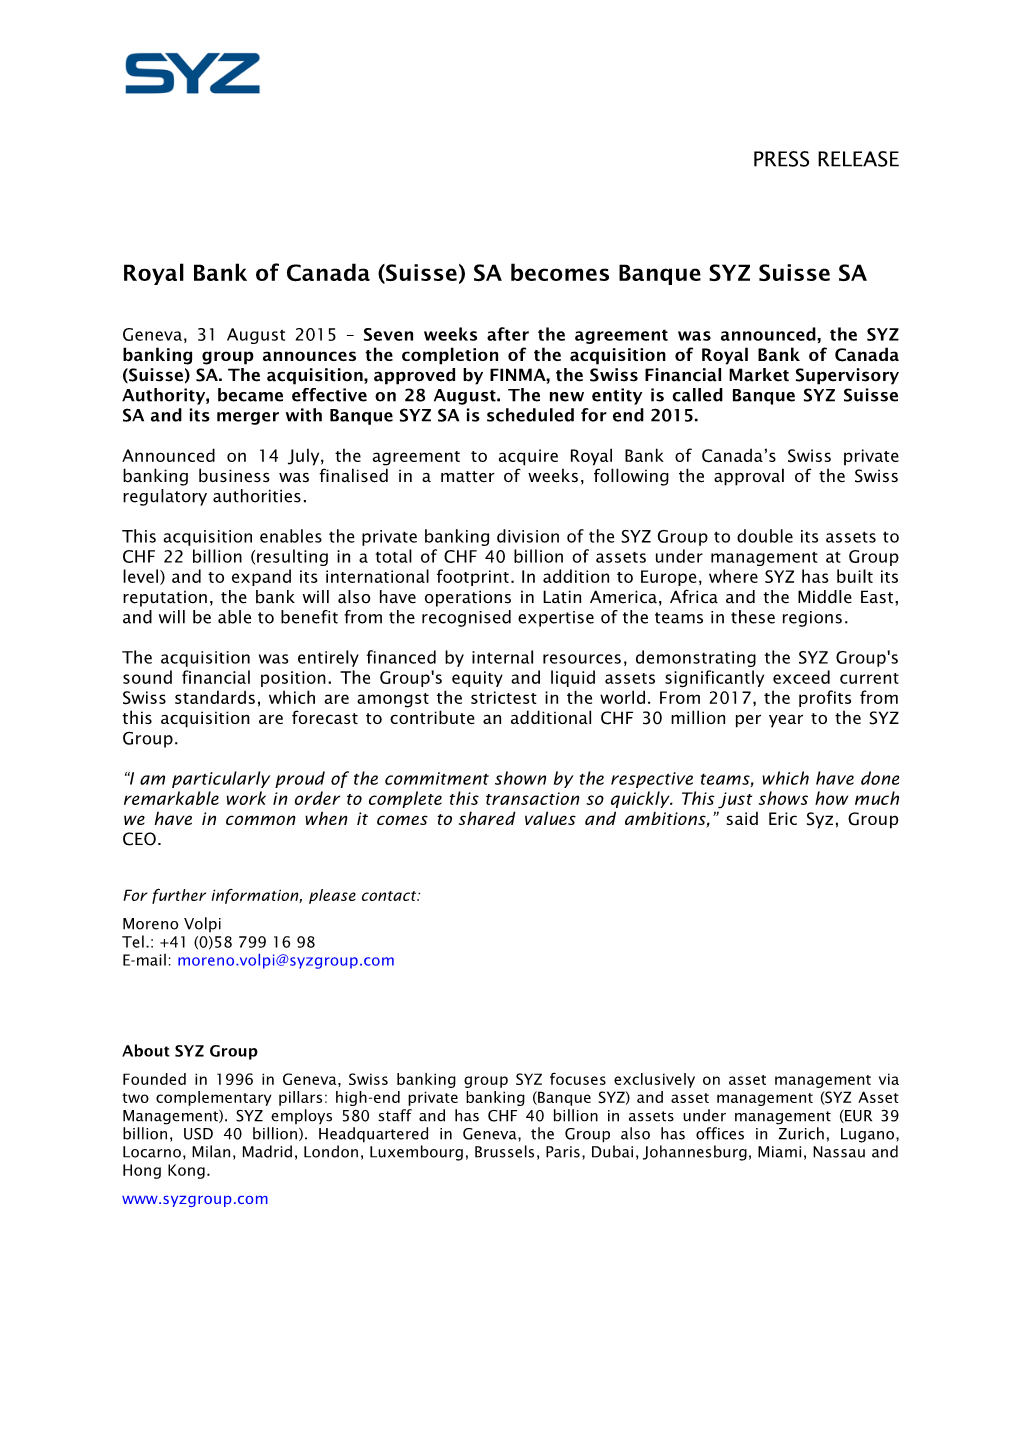 Royal Bank of Canada (Suisse) SA Becomes Banque SYZ Suisse SA